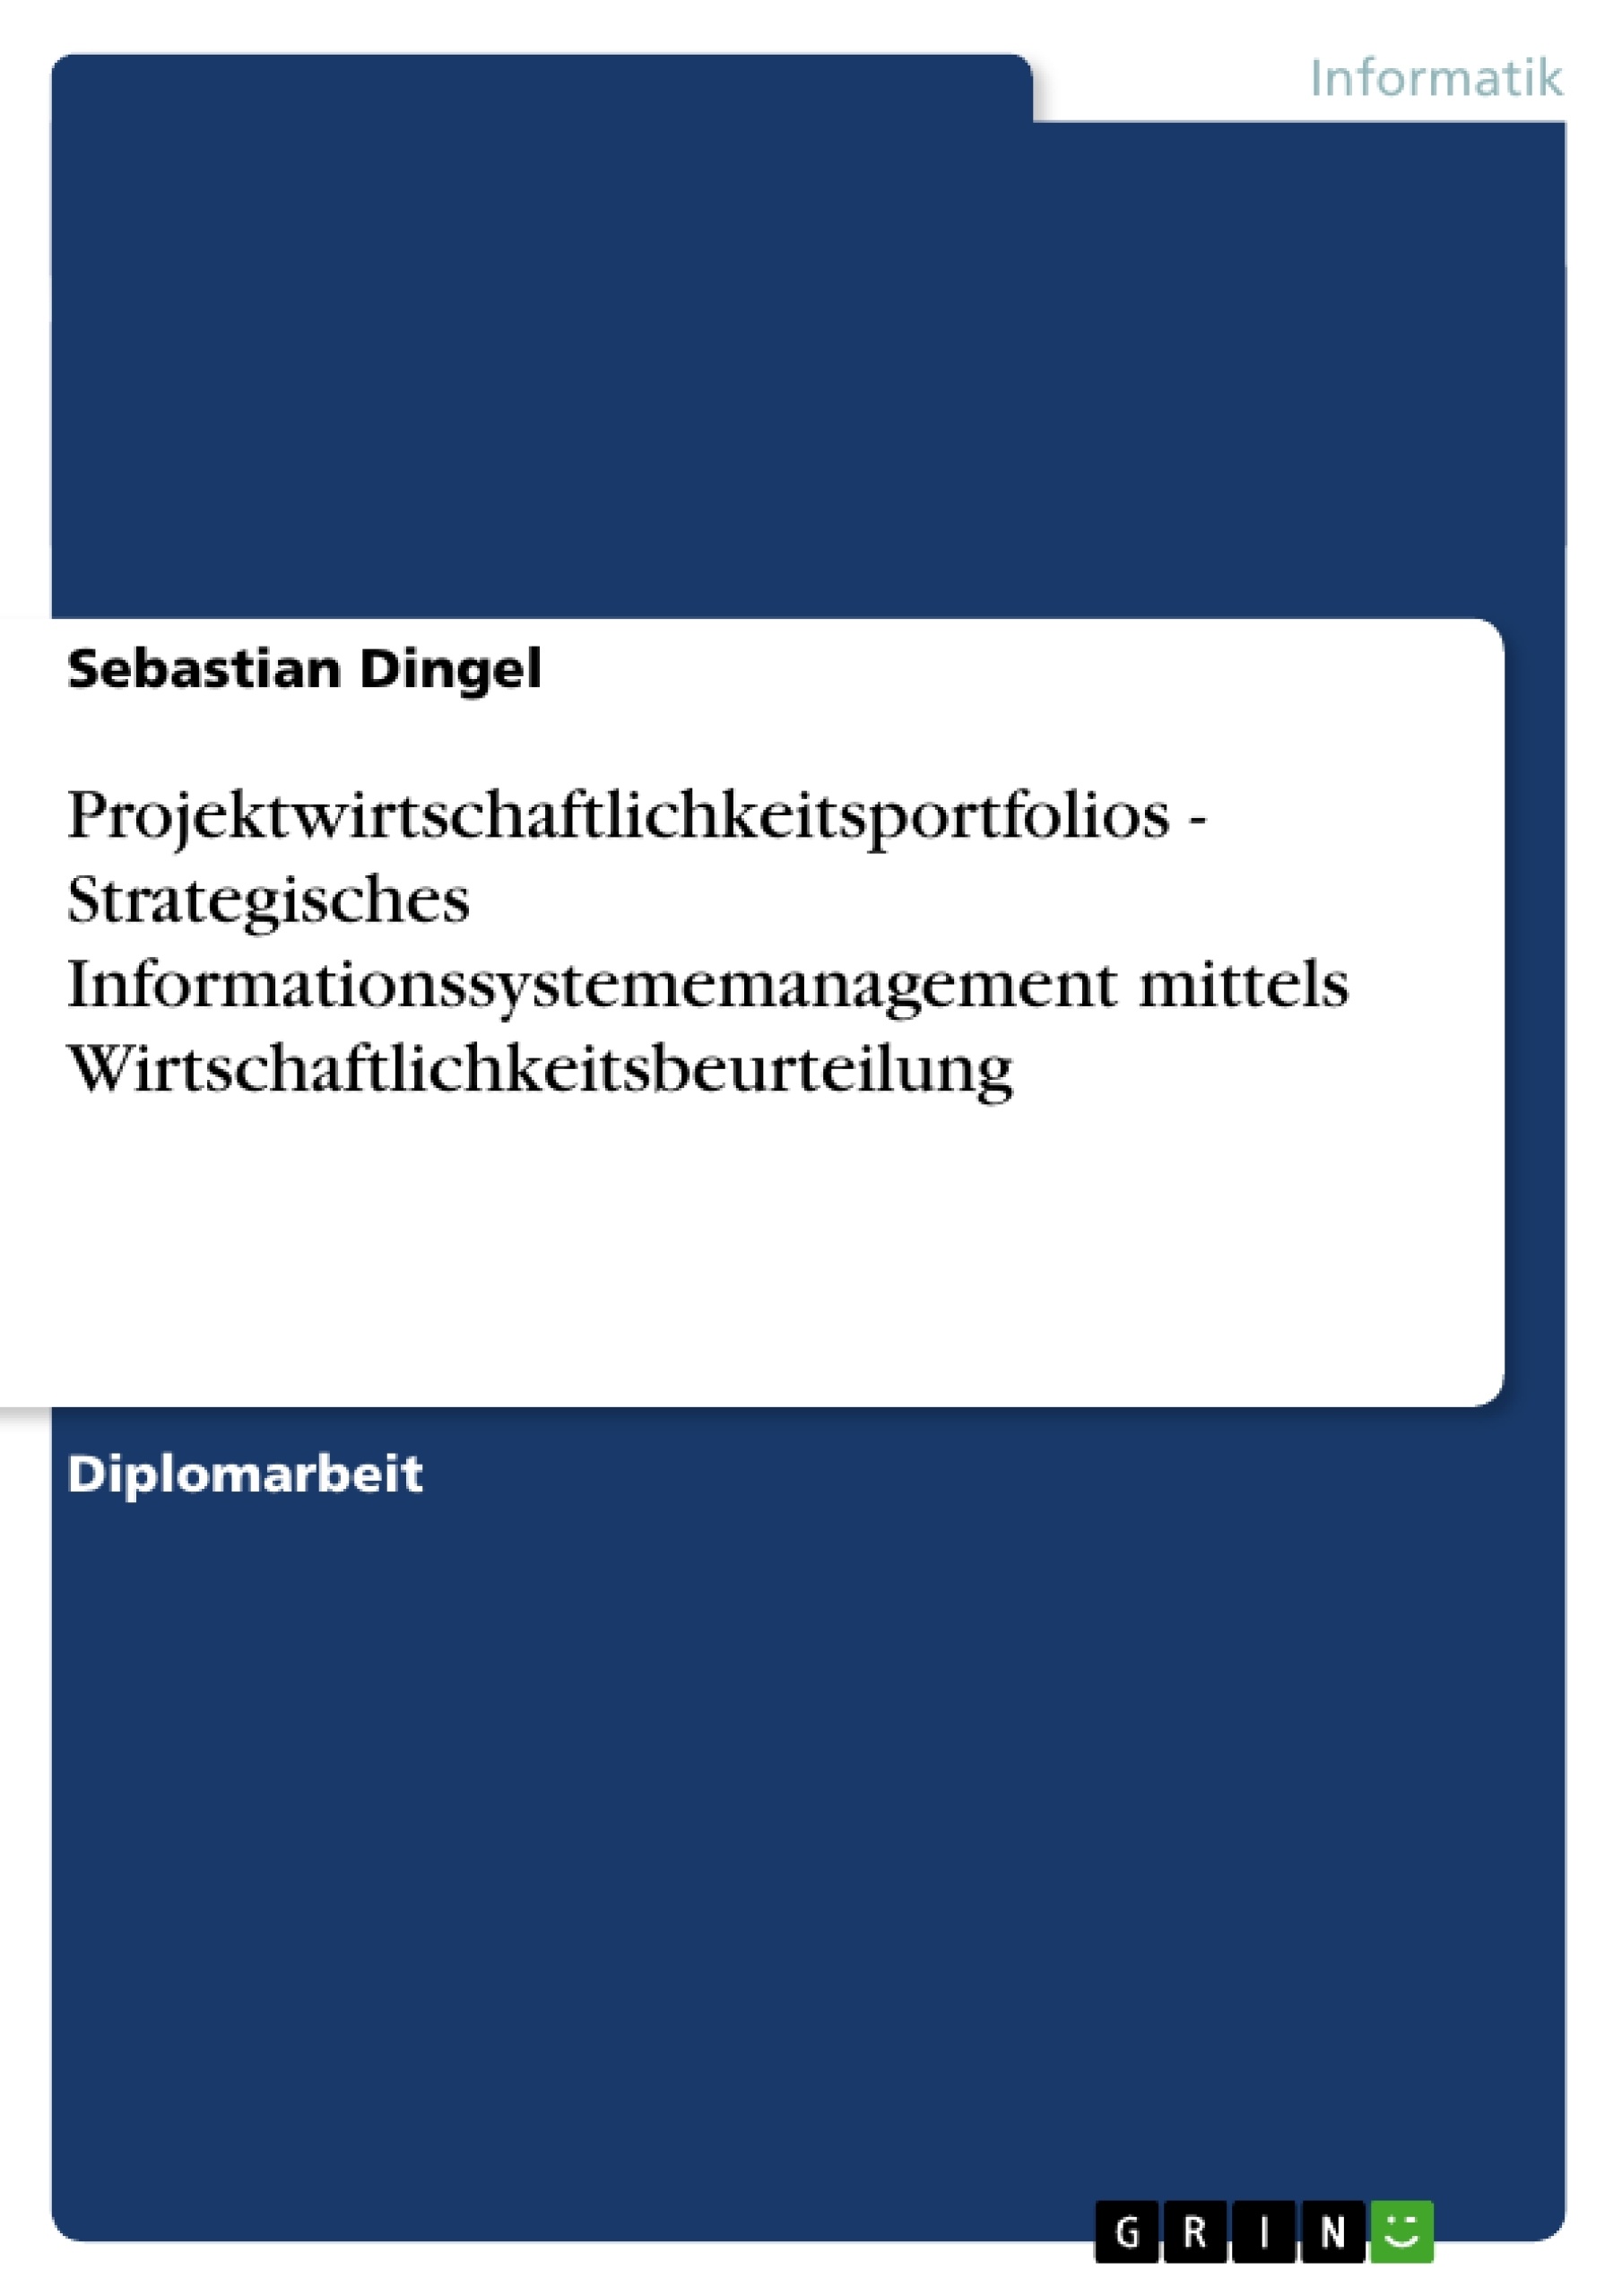 Title: Projektwirtschaftlichkeitsportfolios - Strategisches Informationssystememanagement mittels Wirtschaftlichkeitsbeurteilung